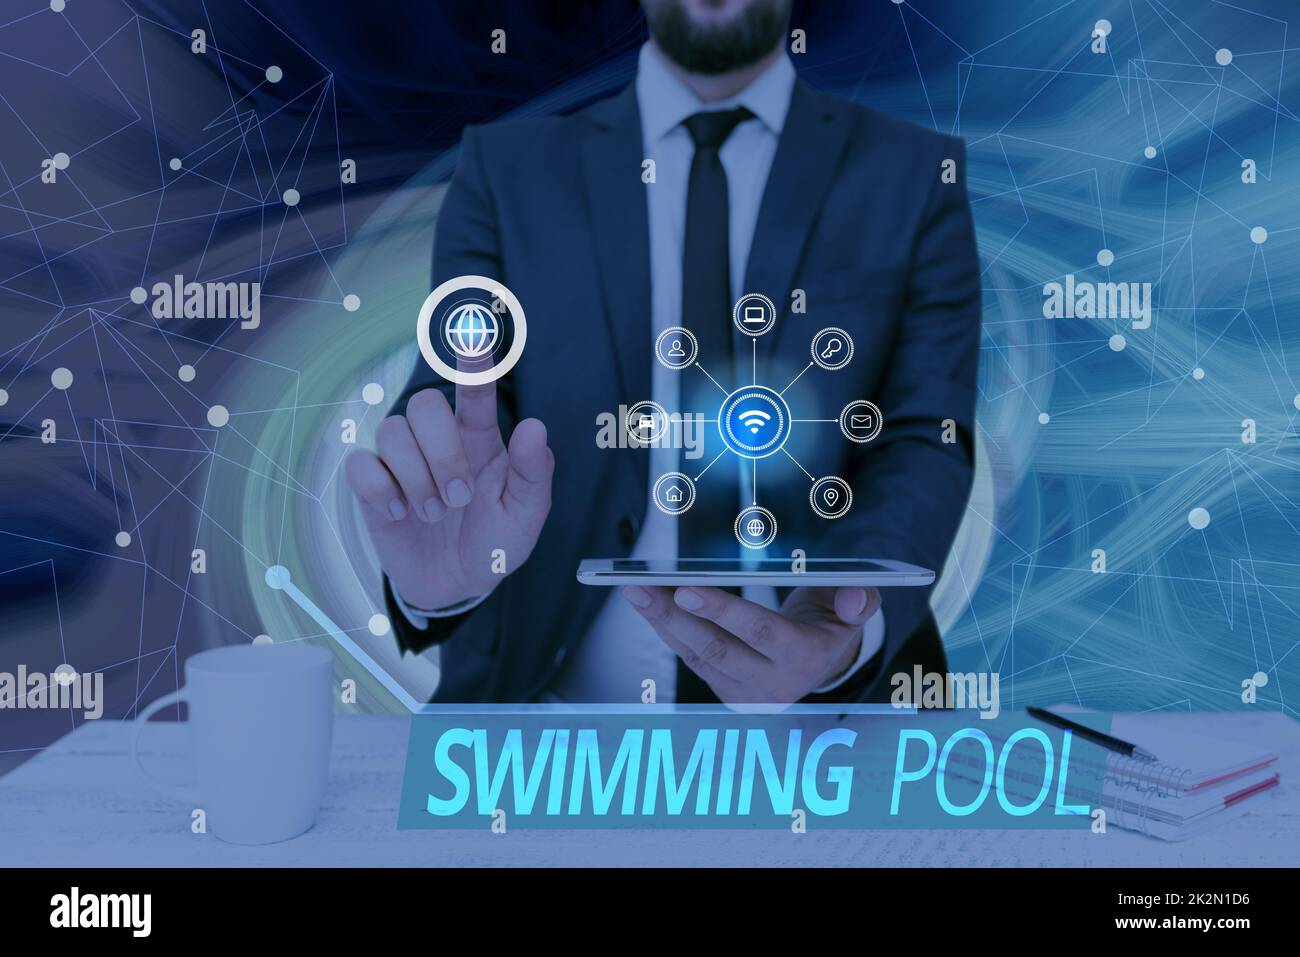 Konzeptionelle Ausstellung Swimmingpool. Geschäftsübersichtsstruktur, die Wasser für Freizeitaktivitäten hält Bildschirm des Handys mit futuristischer Technologie. Stockfoto